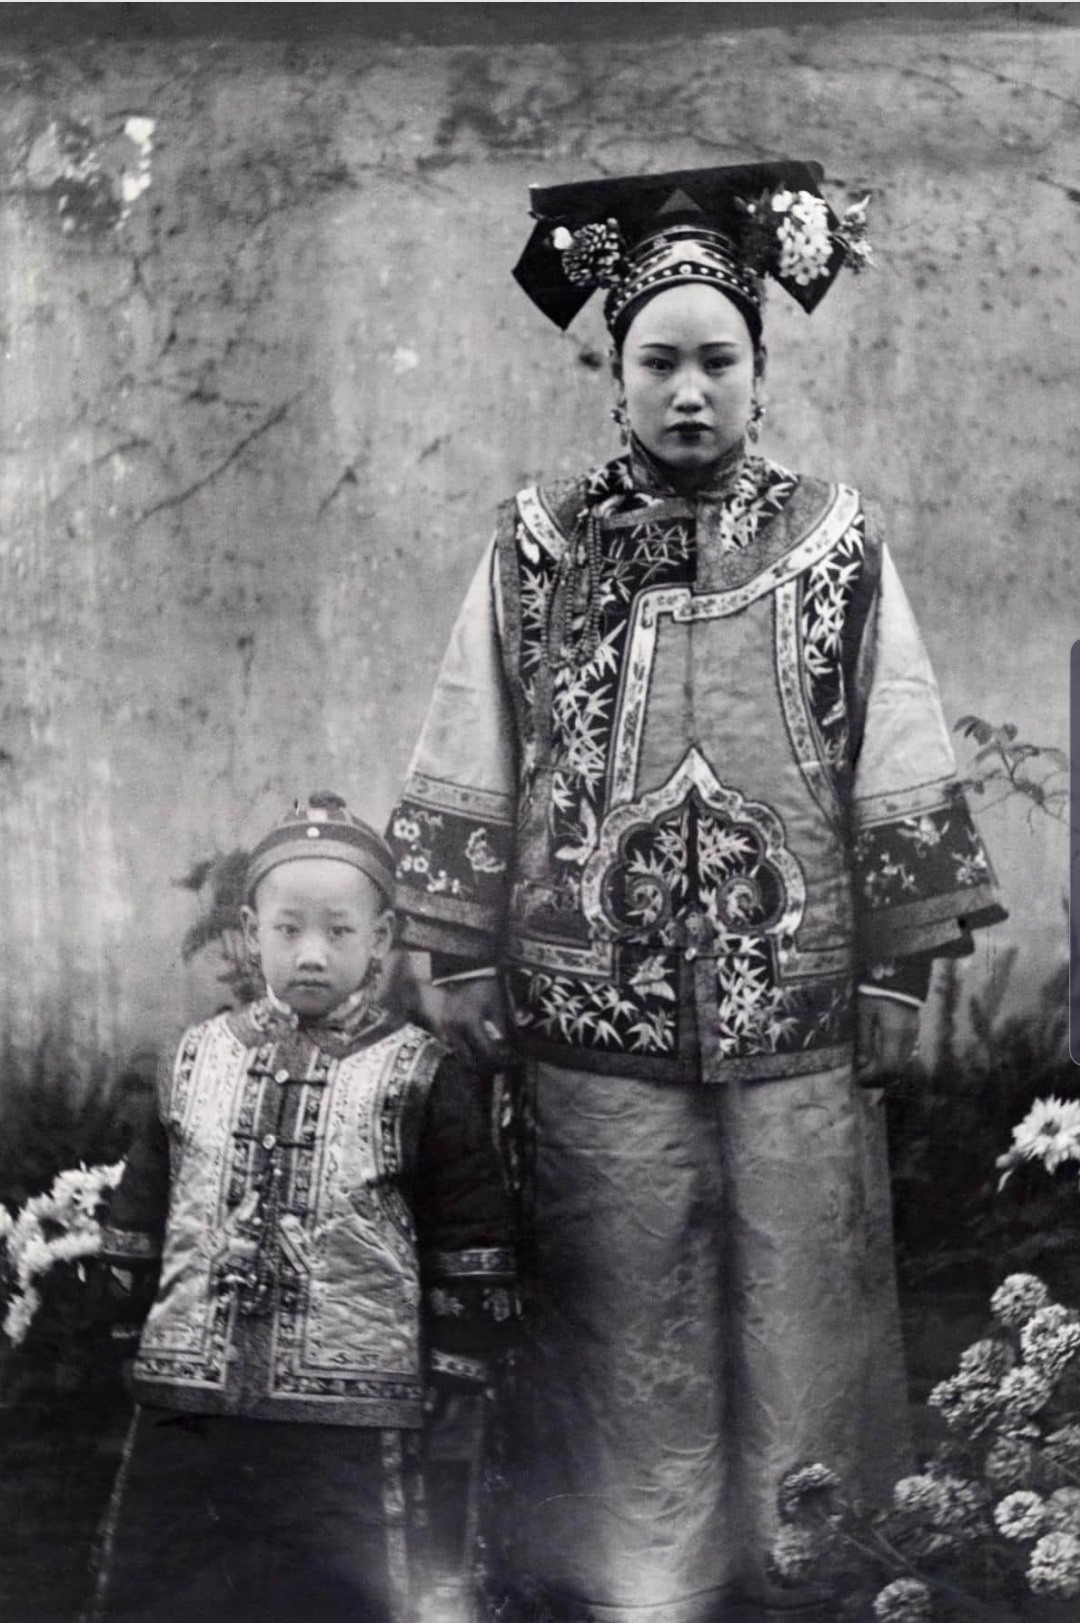 Bà mẹ với vẻ đẹp tao nhã trong trang phục truyền thống ở khu vực Mãn Châu, Trung Quốc. Ảnh: NG